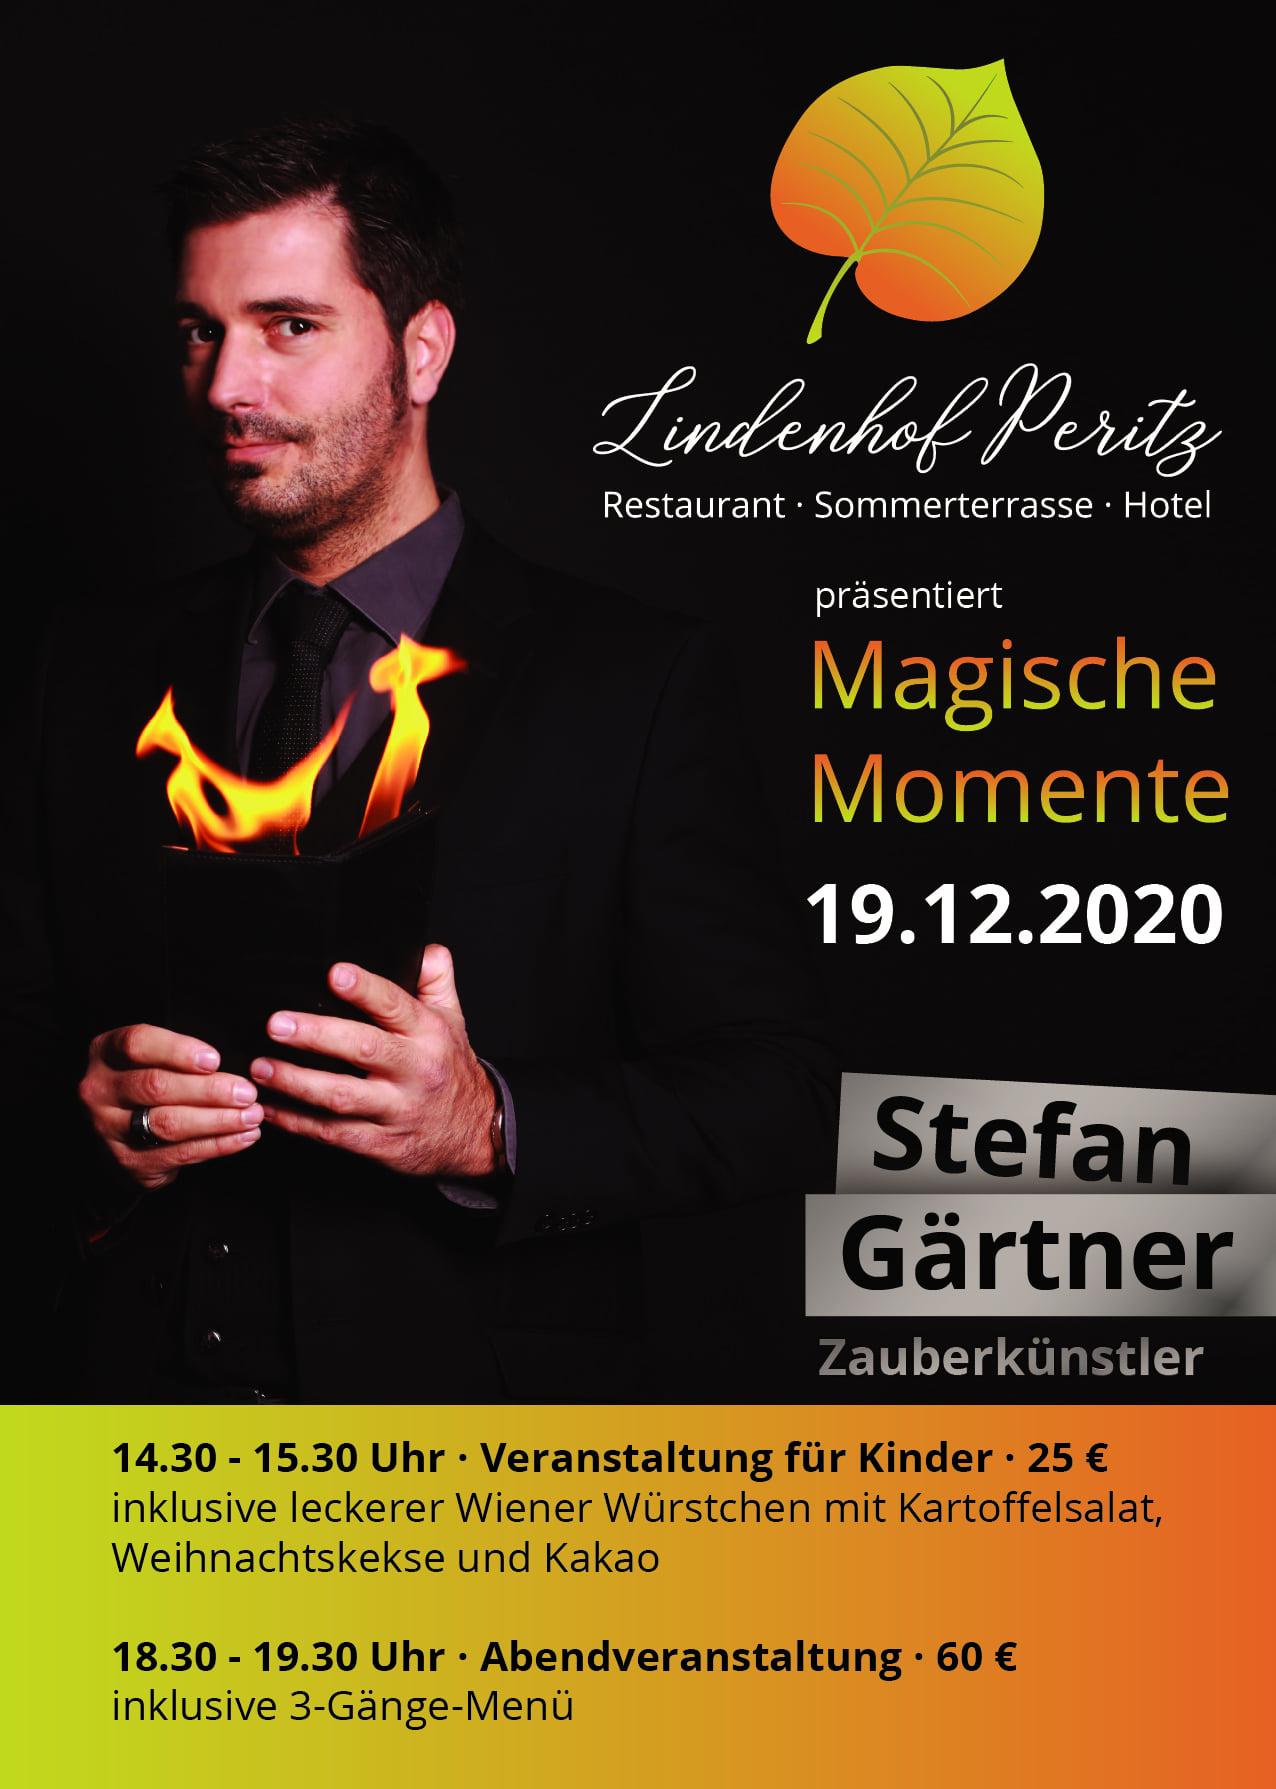 Magische Momente mit Stefan Gärtner im Lindenhof Peritz